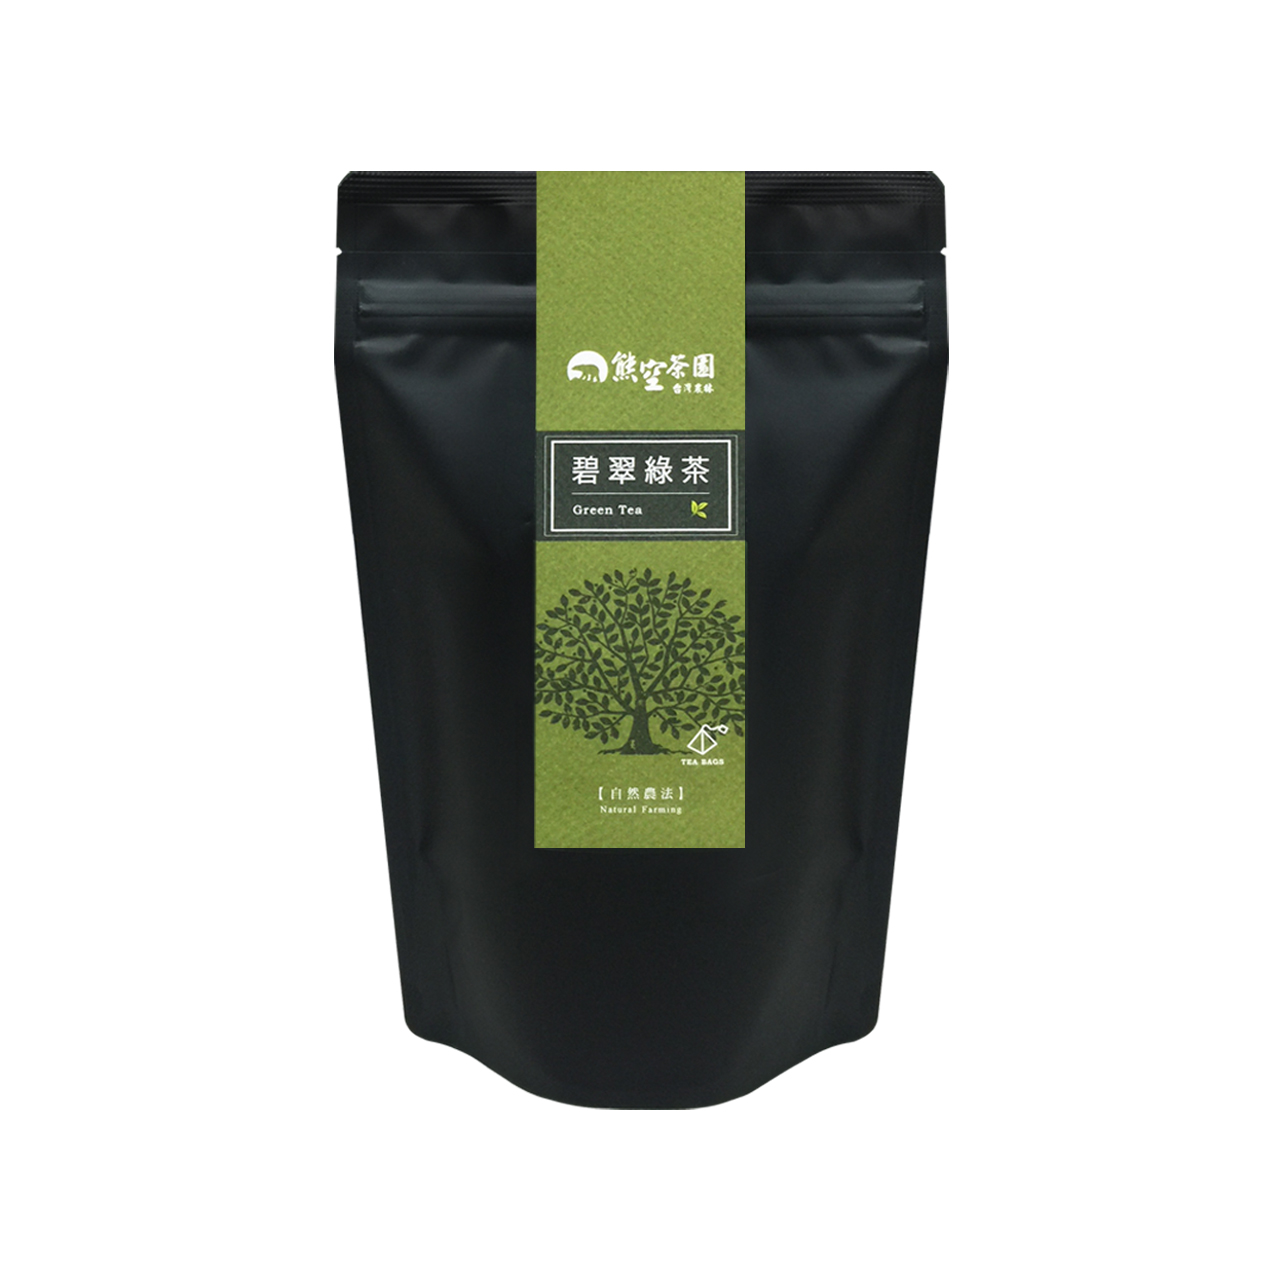 熊空-碧翠綠茶立體茶包 2g*25入(自然農法)